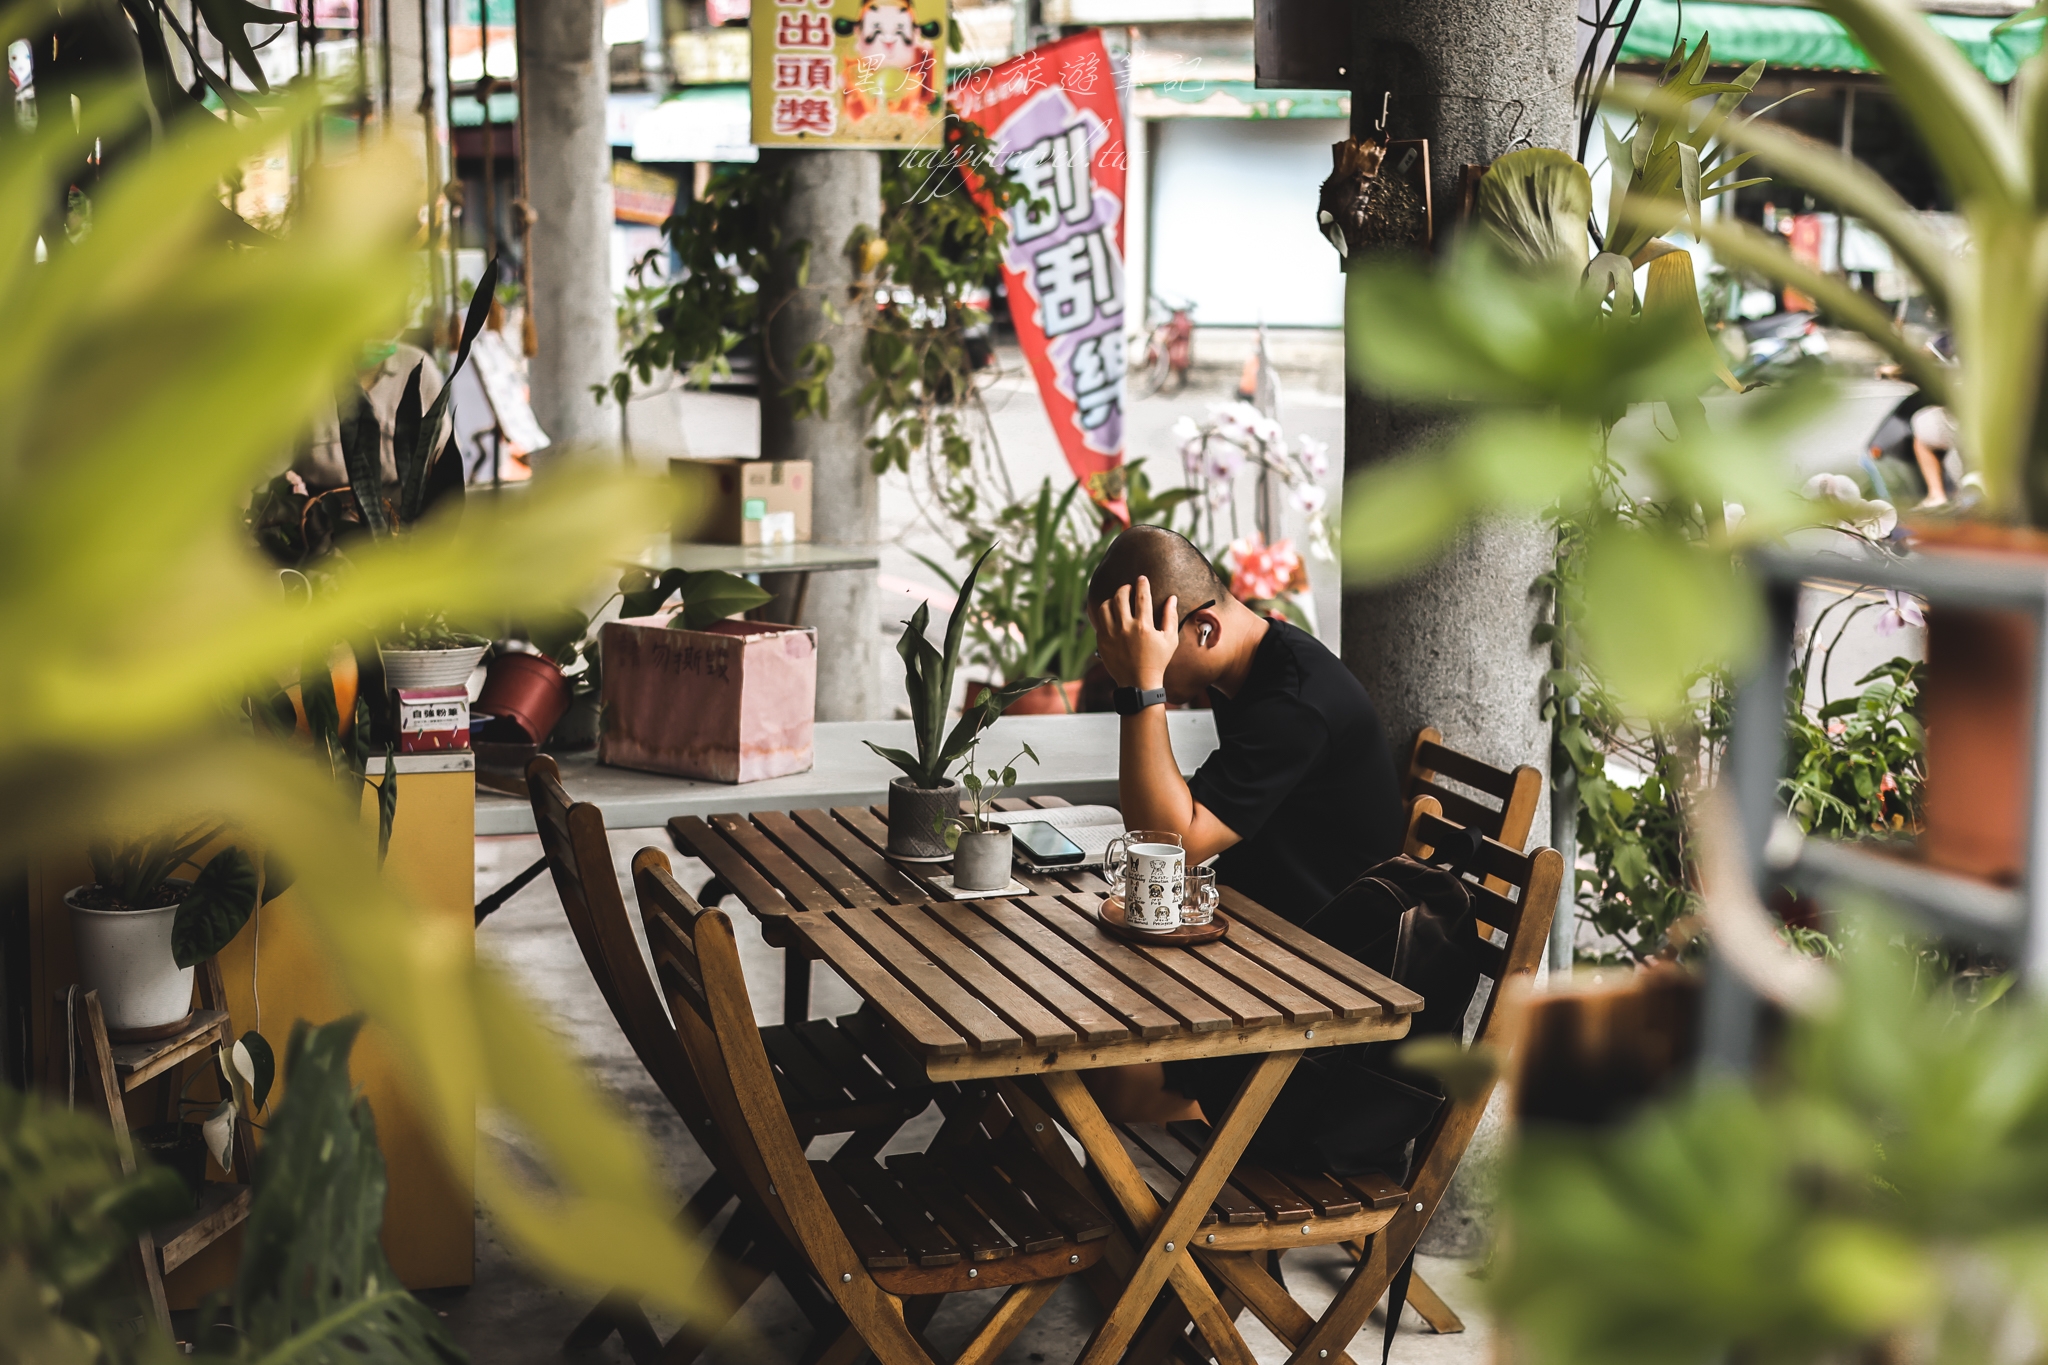 雲林咖啡廳。丘山角珈琲室｜小鄉鎮中的日式老宅咖啡廳，圍繞著綠色植物，享受著自然愜意的下午茶時光/雲林美食/雲林景點